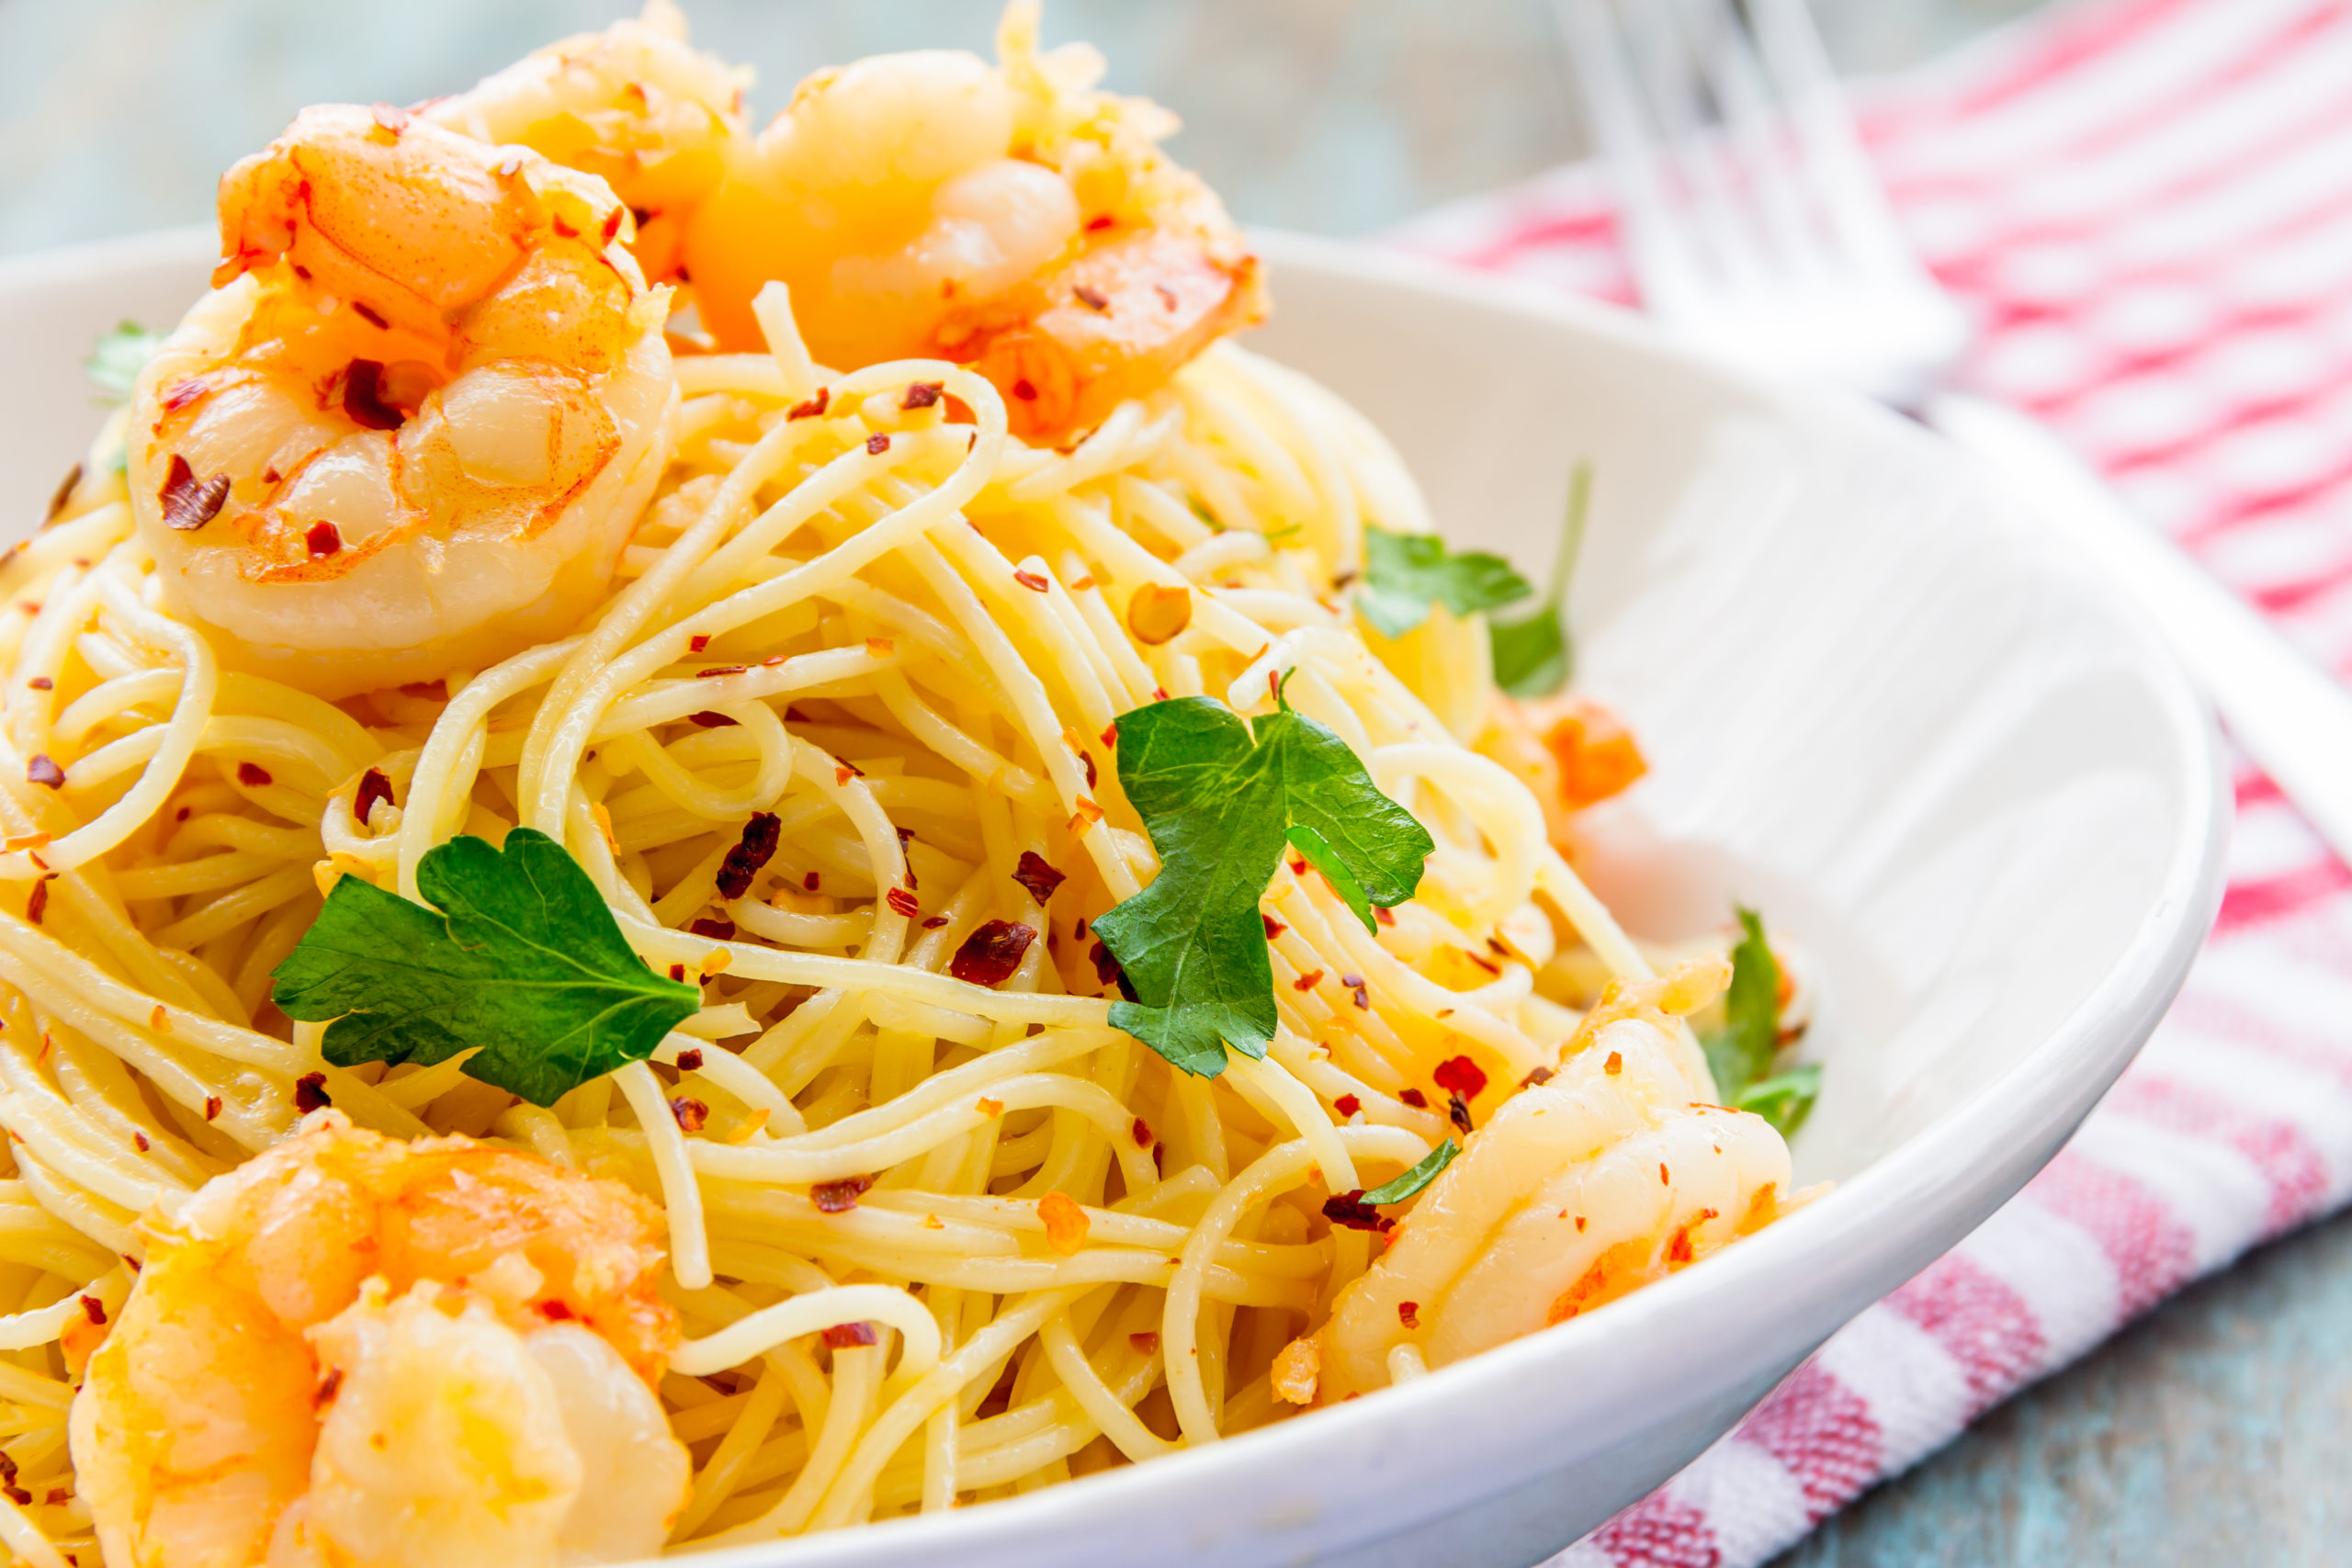 Garlic butter shrimp pasta dinner recipe 